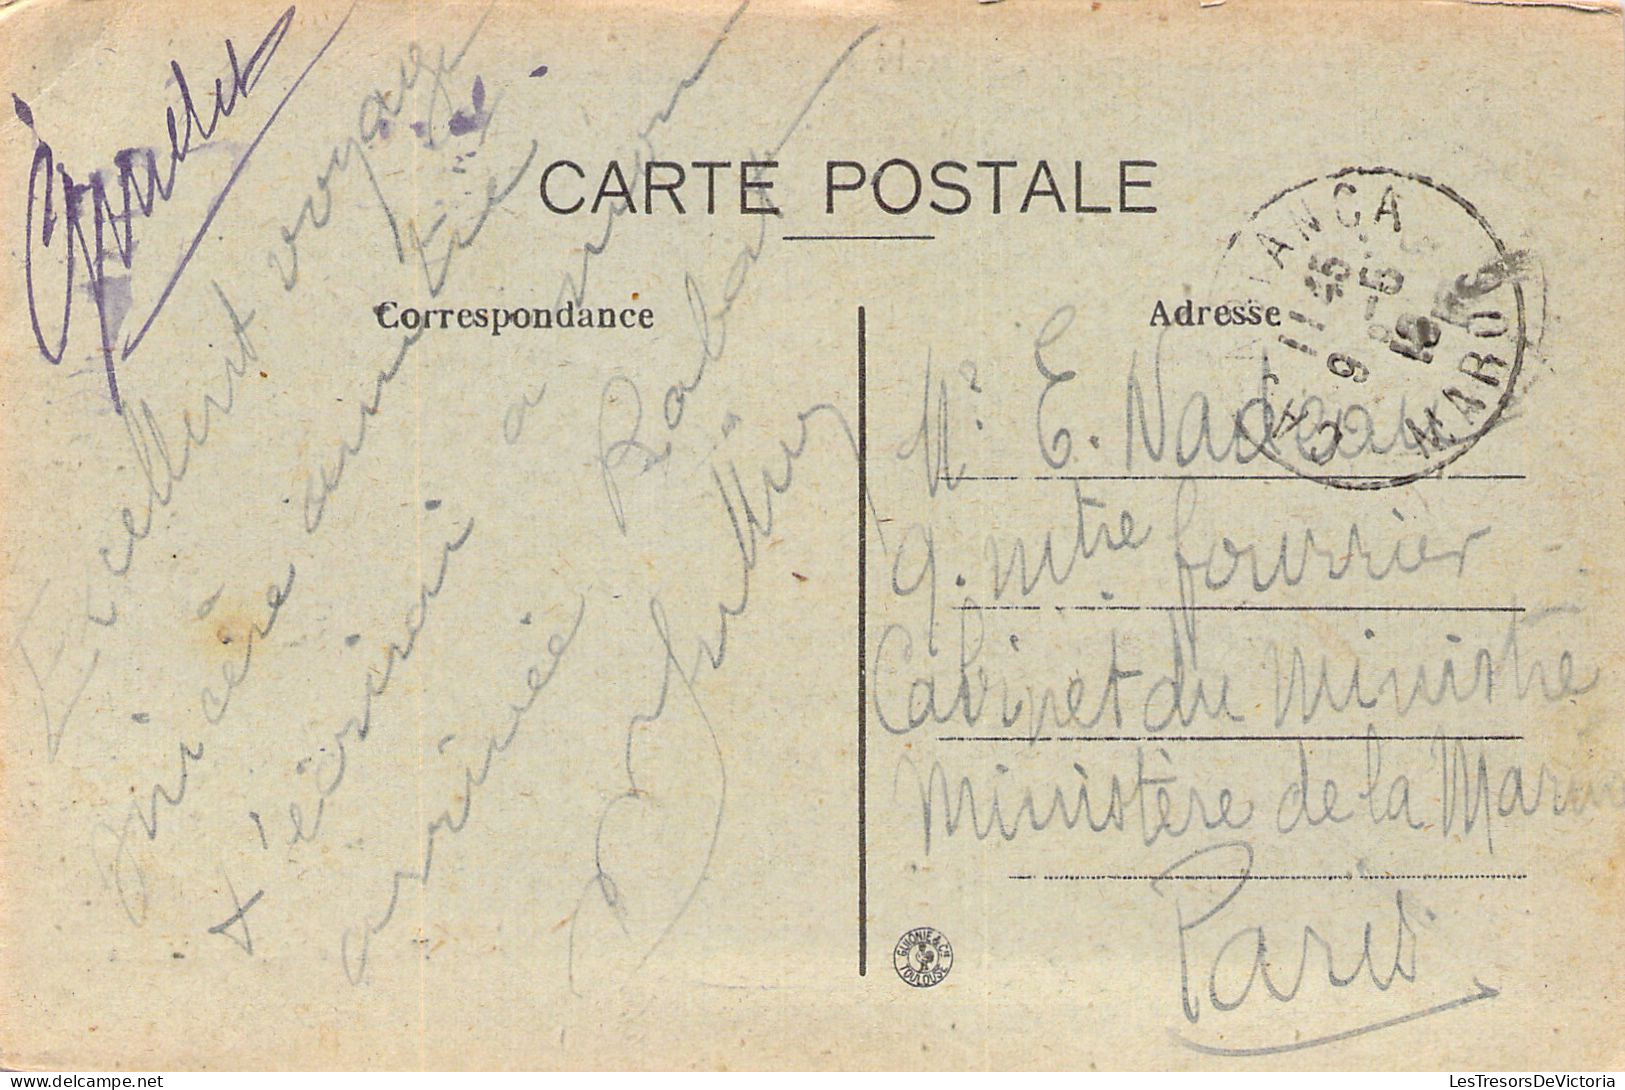 MAROC - Casablanca - Terrasses Et Mosquées - Maille édit - Carte Postale Ancienne - Casablanca